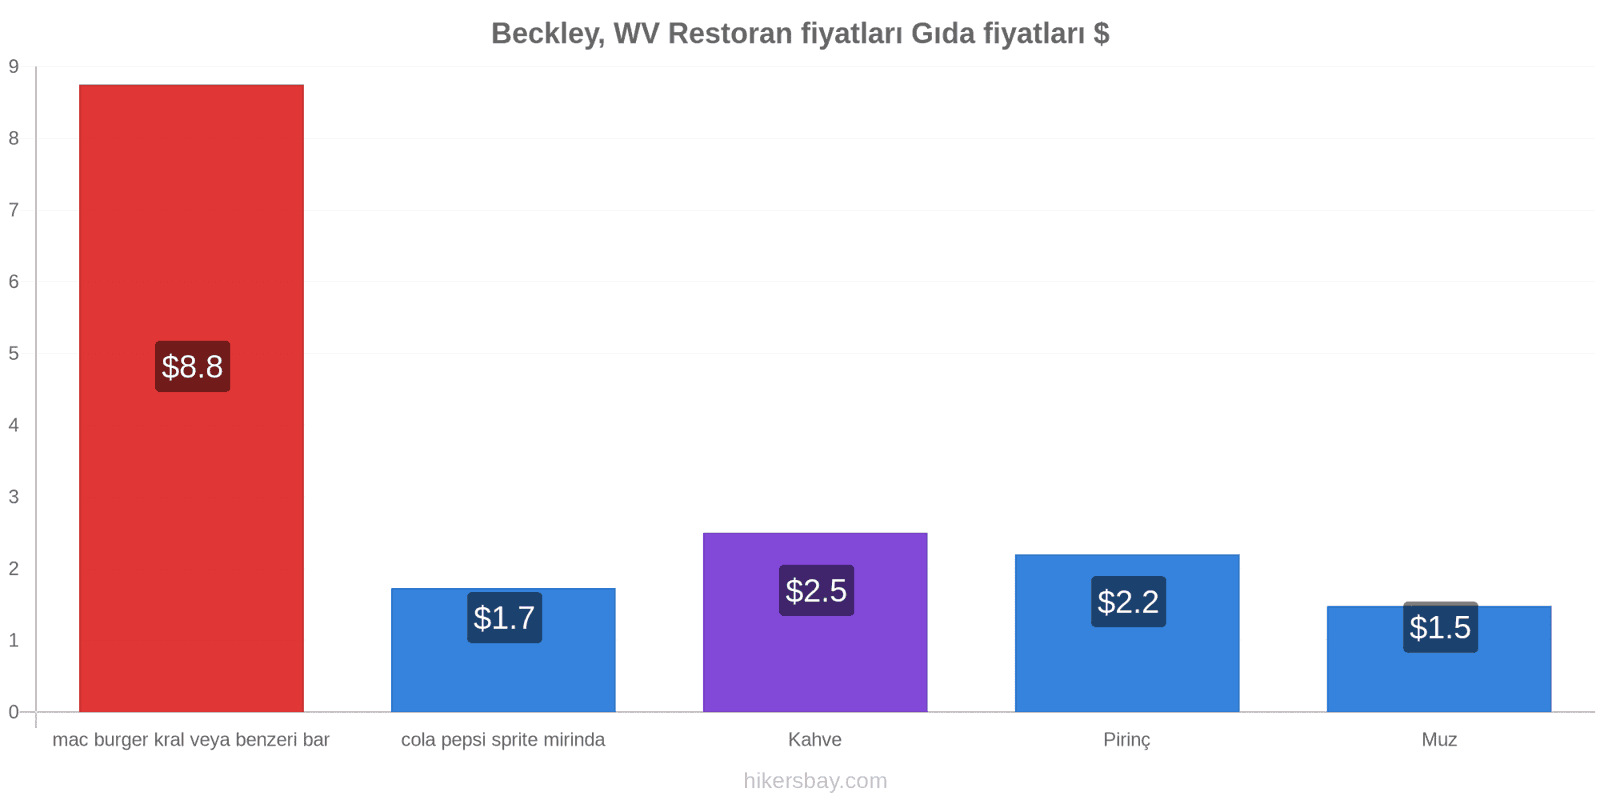 Beckley, WV fiyat değişiklikleri hikersbay.com